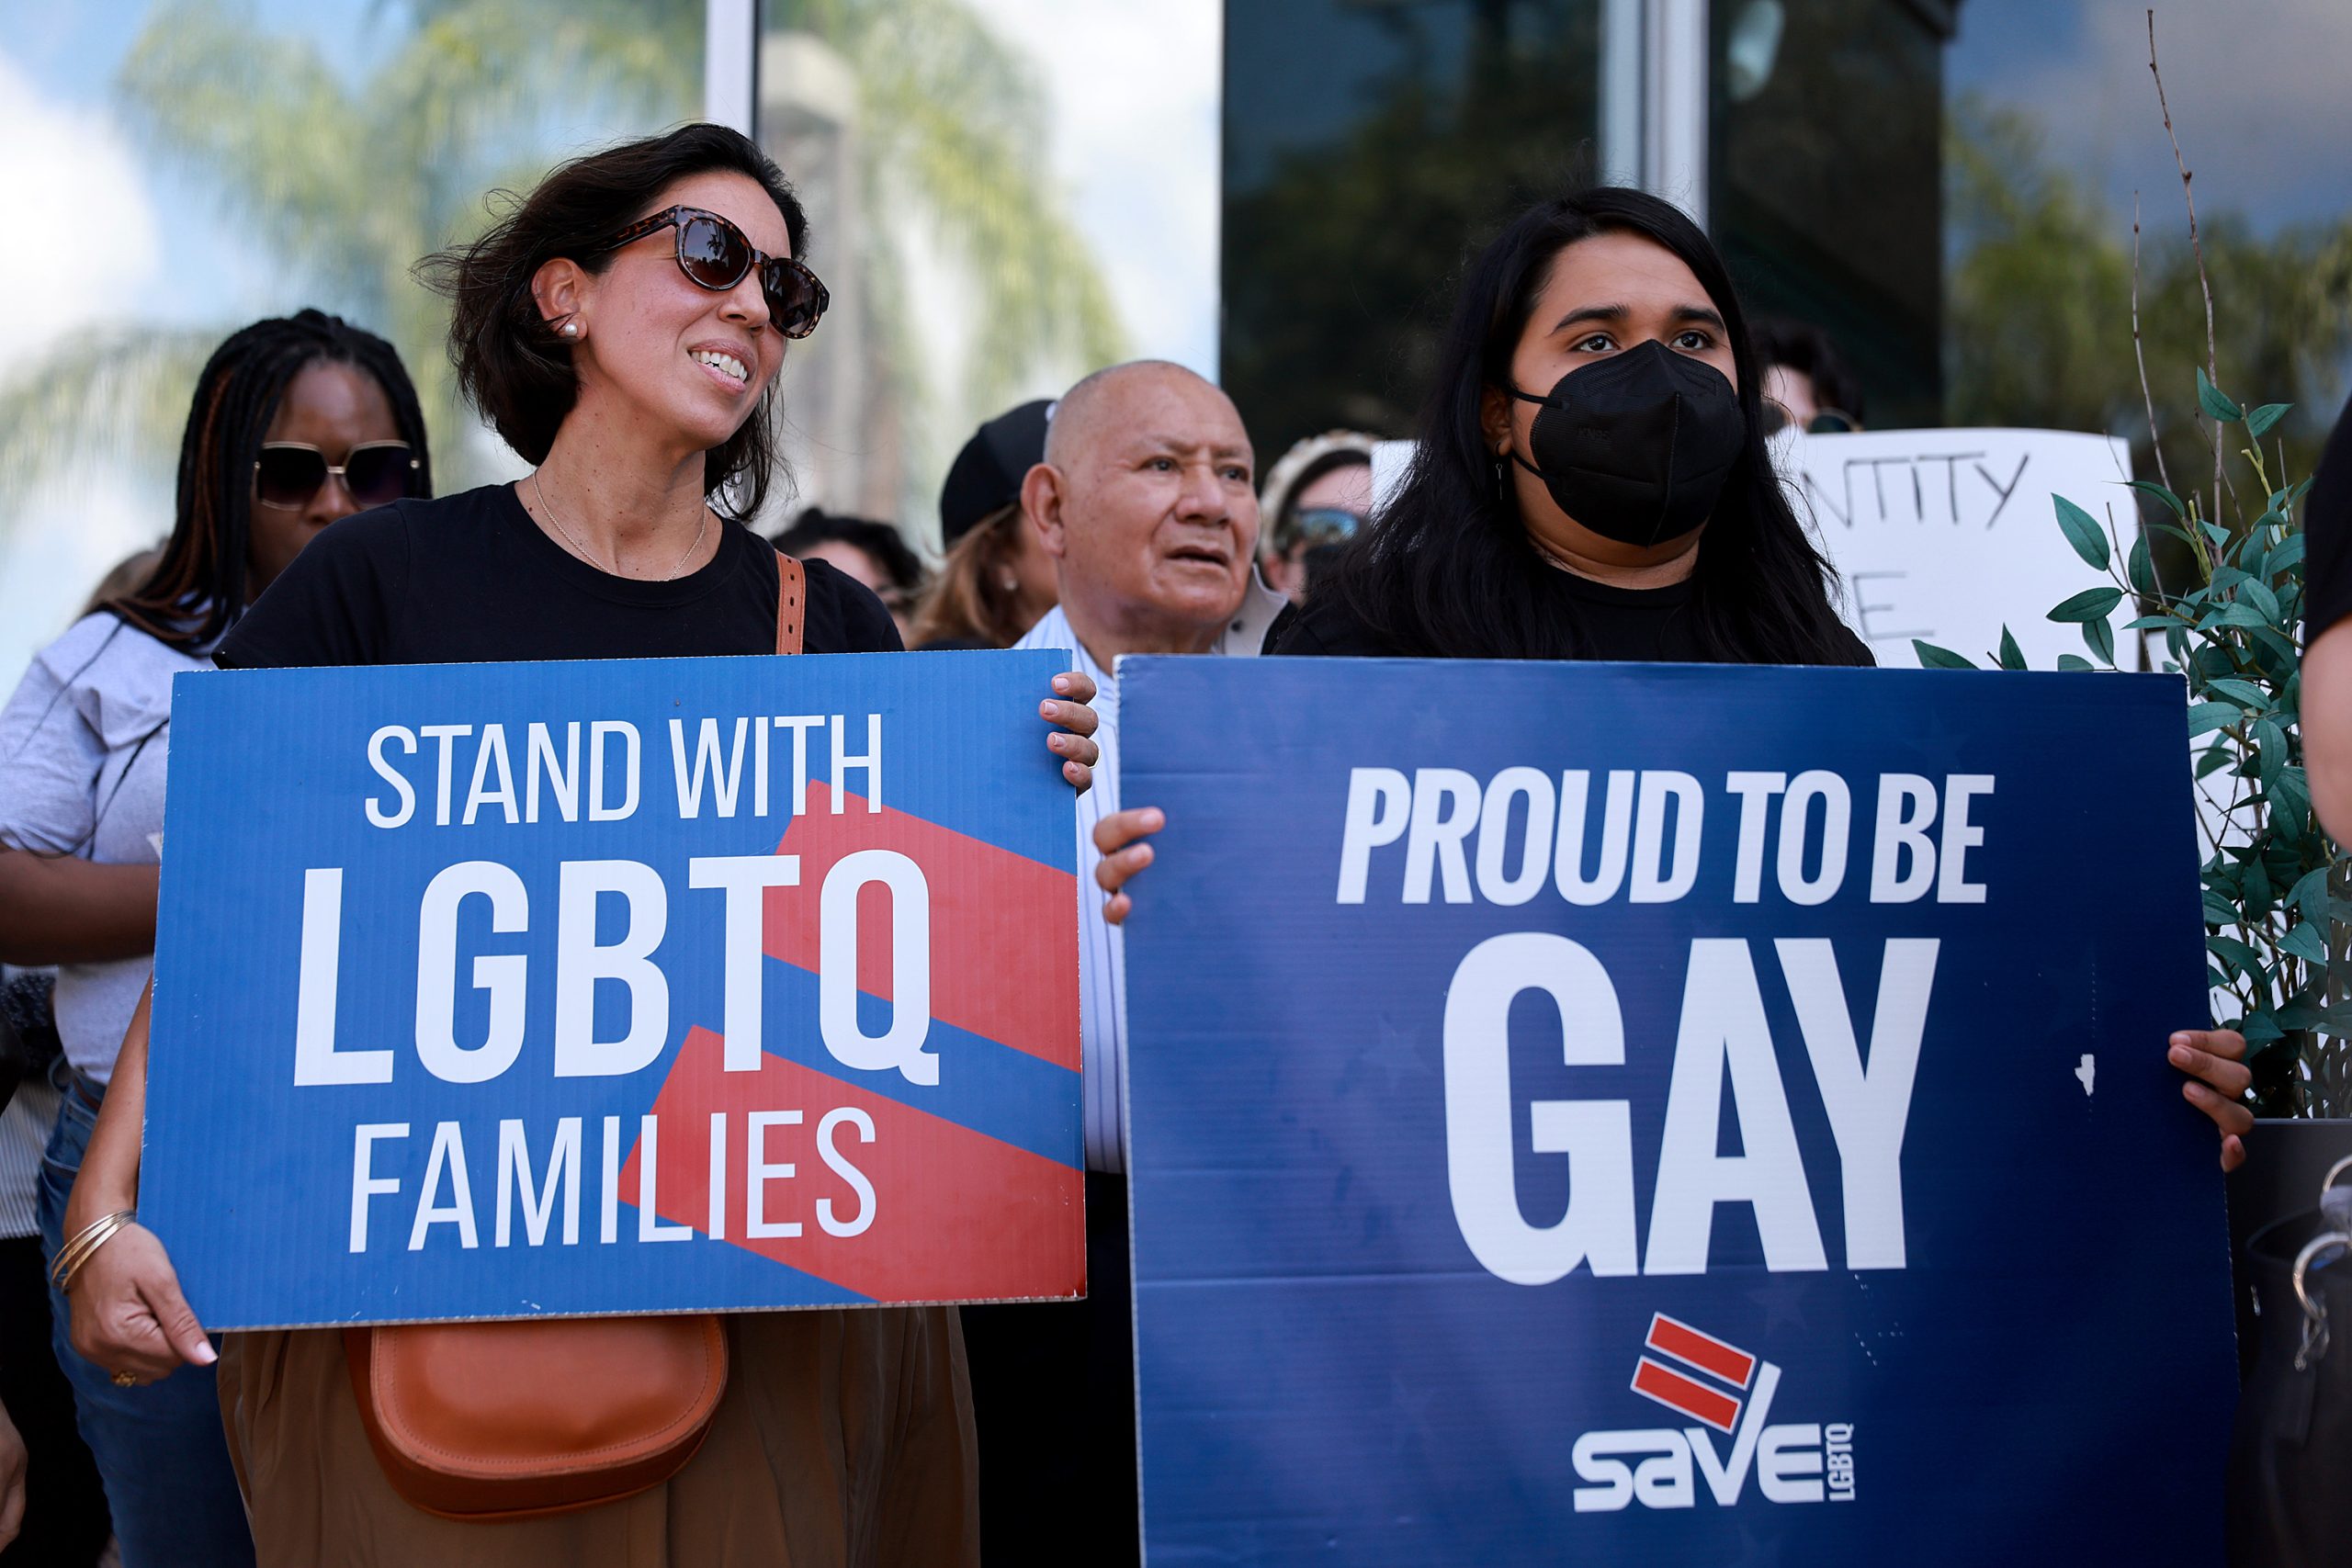 ¿Qué está pasando con Disney y los trabajadores LGBTQ+ de la empresa?